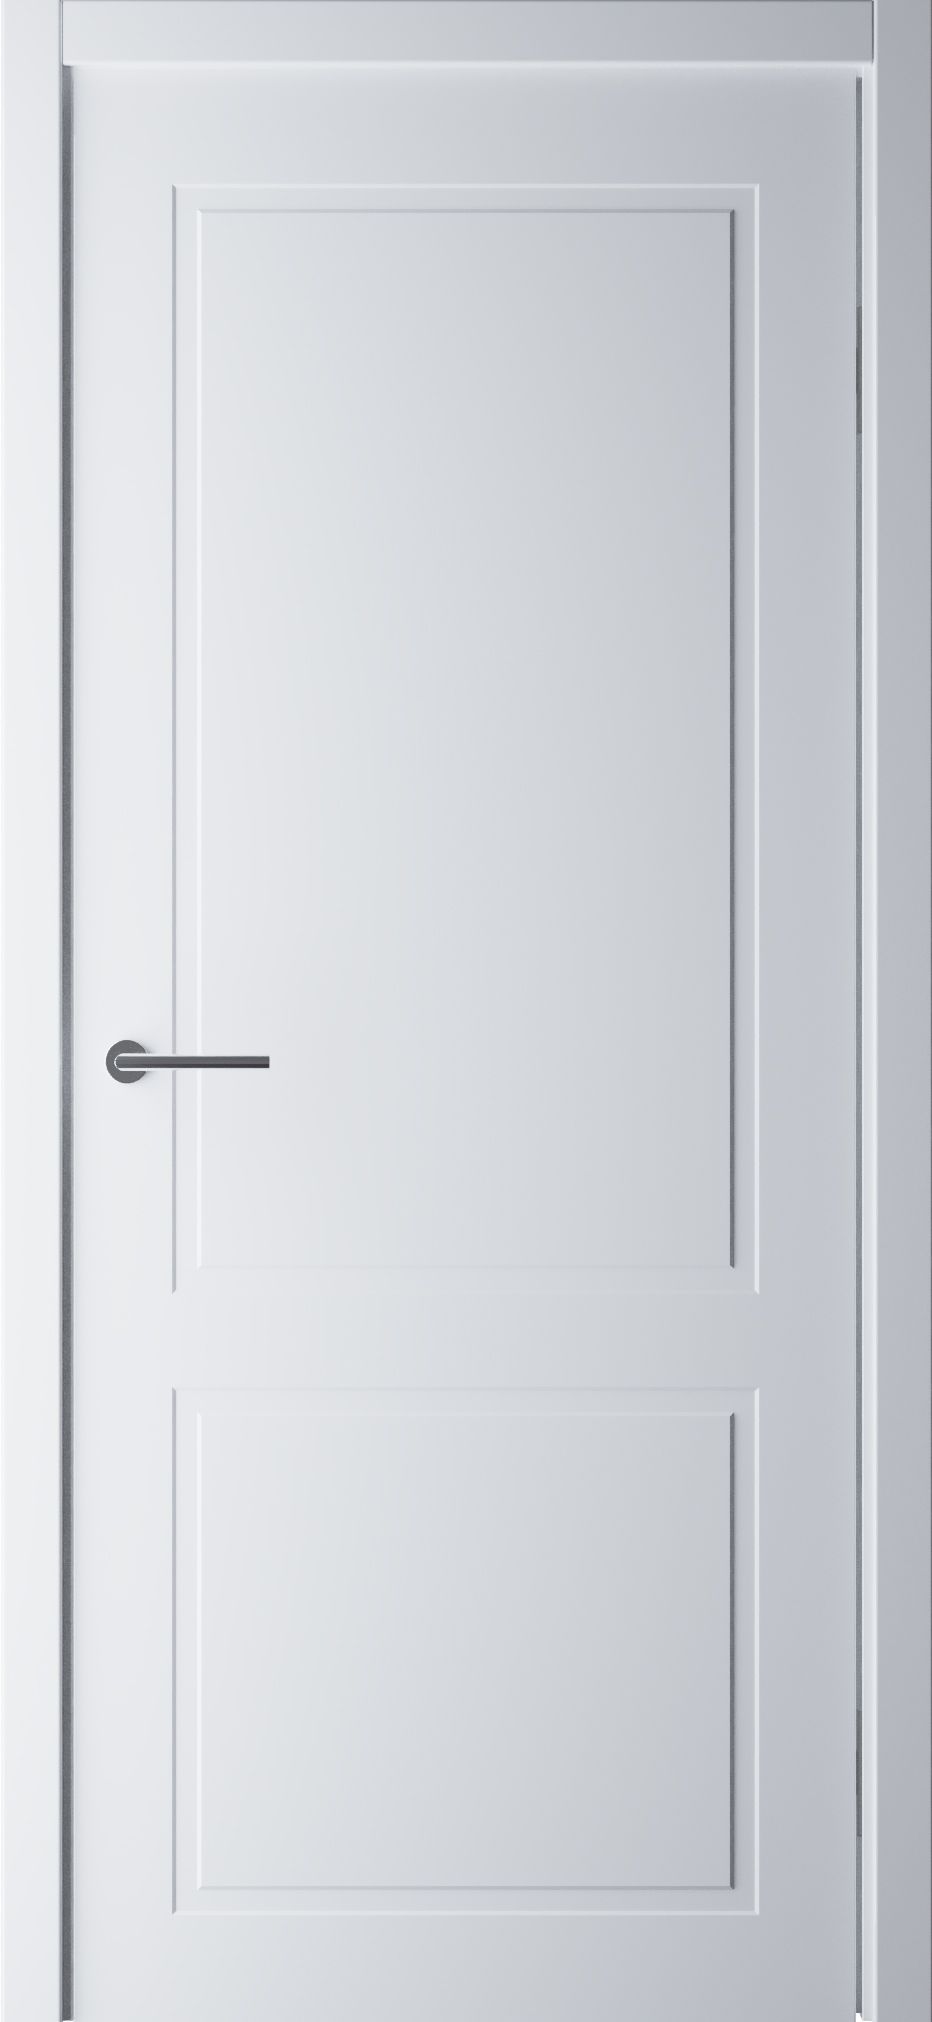 Полотно дверное глухое СХЕМА Эмаль-2, ПГ СтильНео-2 600 белый (без замка)